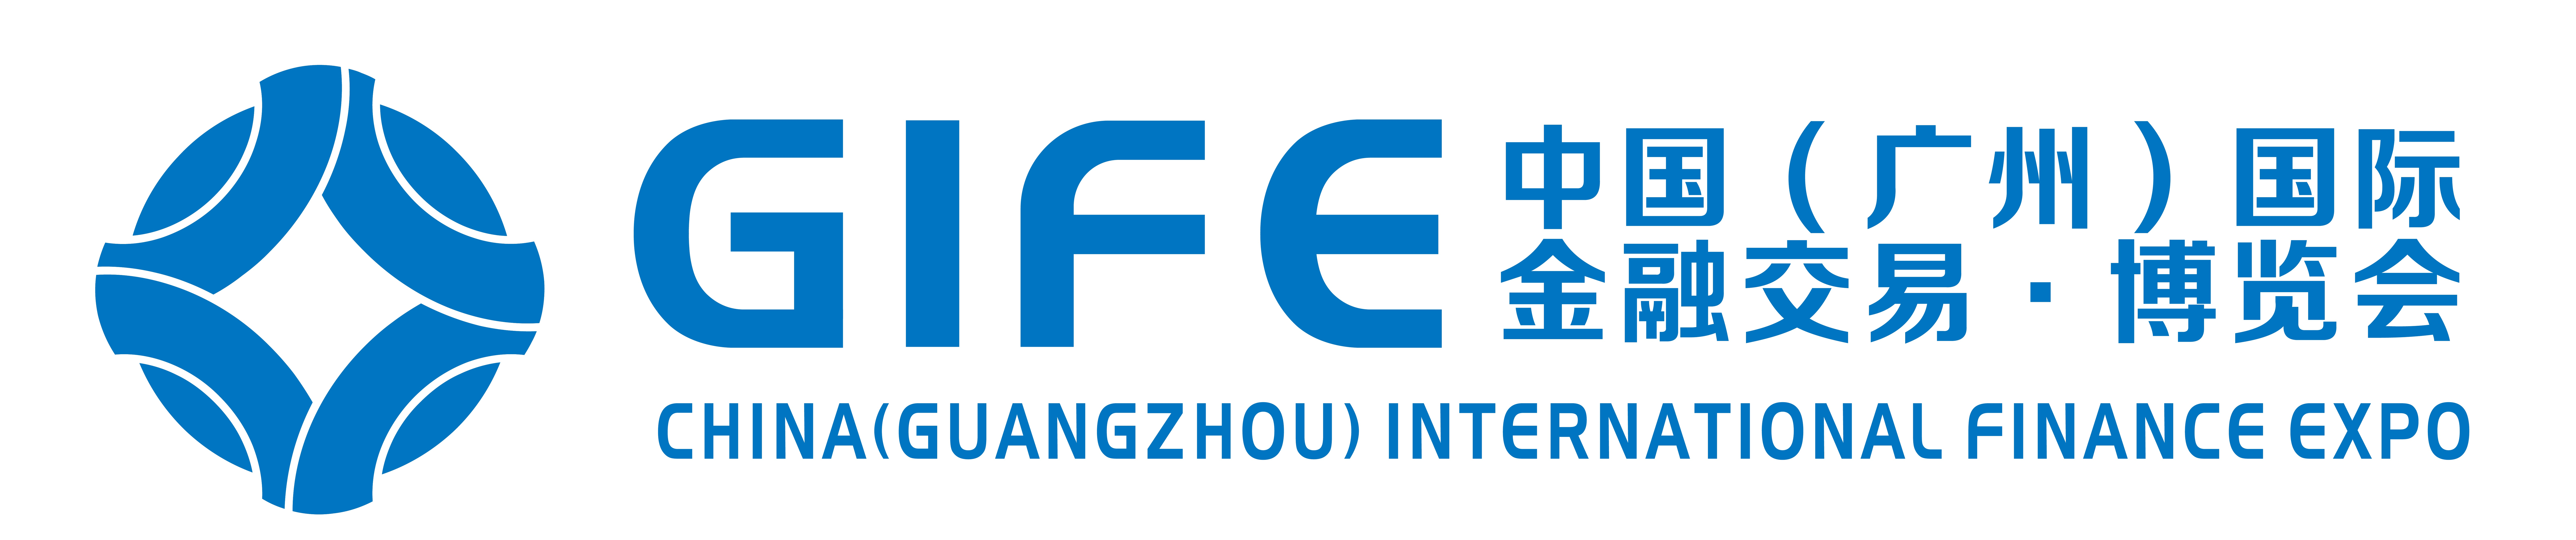 廣州國際金融交易博覽會